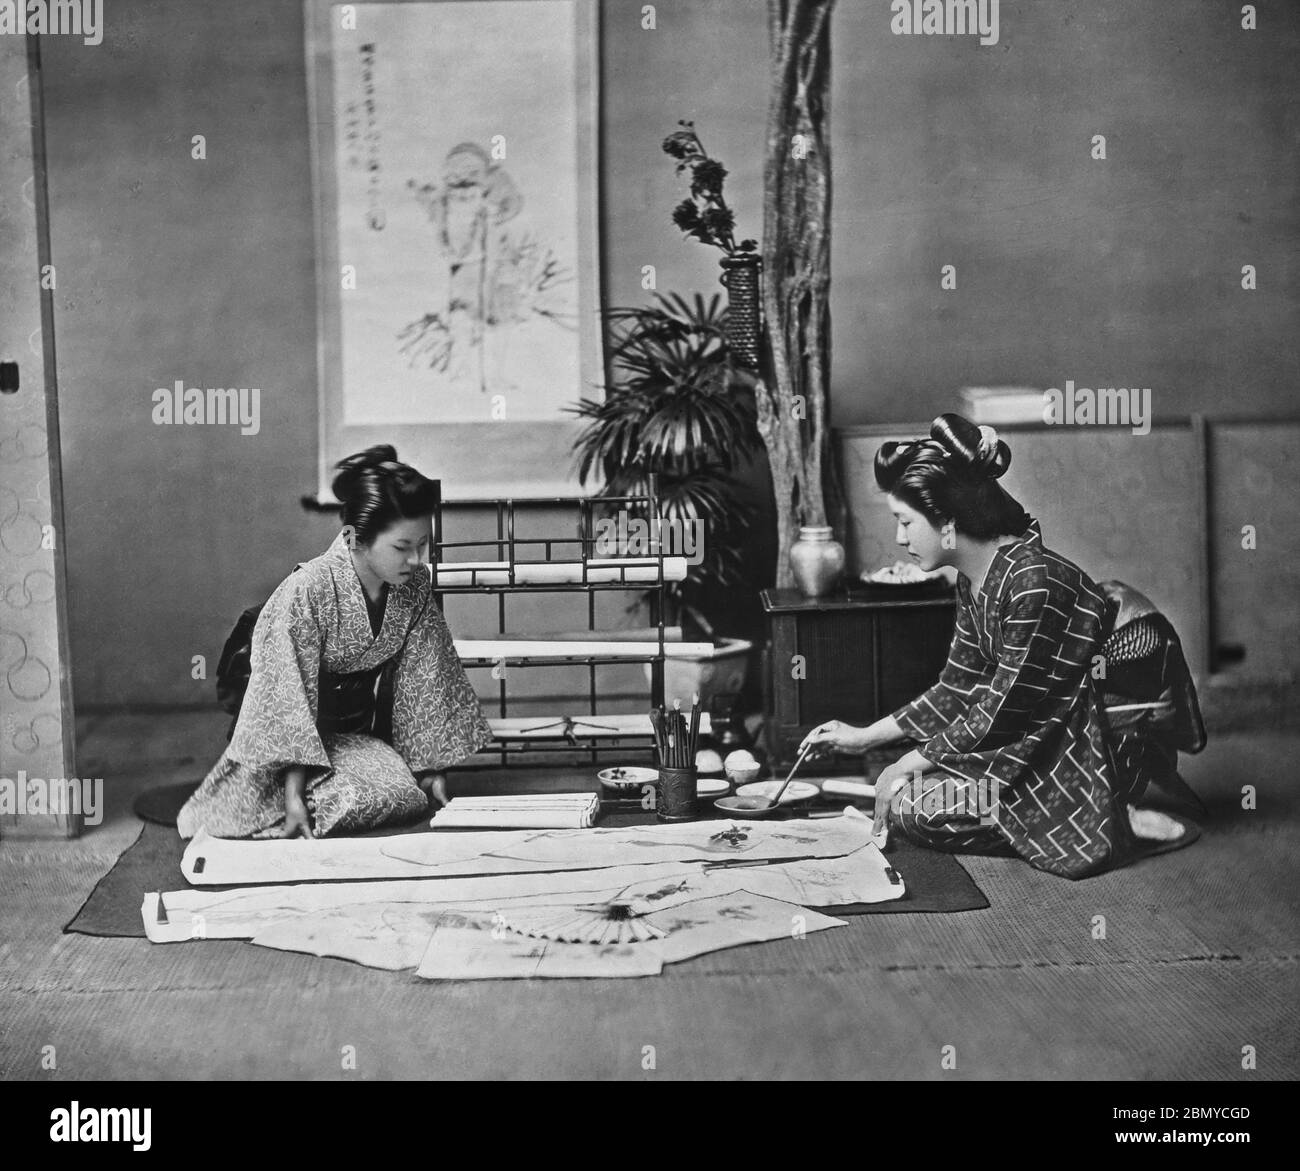 [ 1890er Japan - Japanische Kalligraphie ] - Frau in Kimono Malerei auf einem Kakemono (掛物), eine hängende Rolle . Kakemono werden verwendet, um Gemälde und Kalligraphie zu zeigen und auszustellen. Sie werden normalerweise auf einer flexiblen Rückseite mit Seidengewebe Kanten montiert, so dass sie für die Lagerung gerollt werden können. Aus einer Serie von Glasdias, die vom schottischen Fotografen George Washington Wilson (1823–1893) veröffentlicht (aber nicht fotografiert) wurden. Wilsons Firma war einer der größten Verleger von Fotodrucken in der Welt. 19. Jahrhundert Vintage Glas Rutsche. Stockfoto